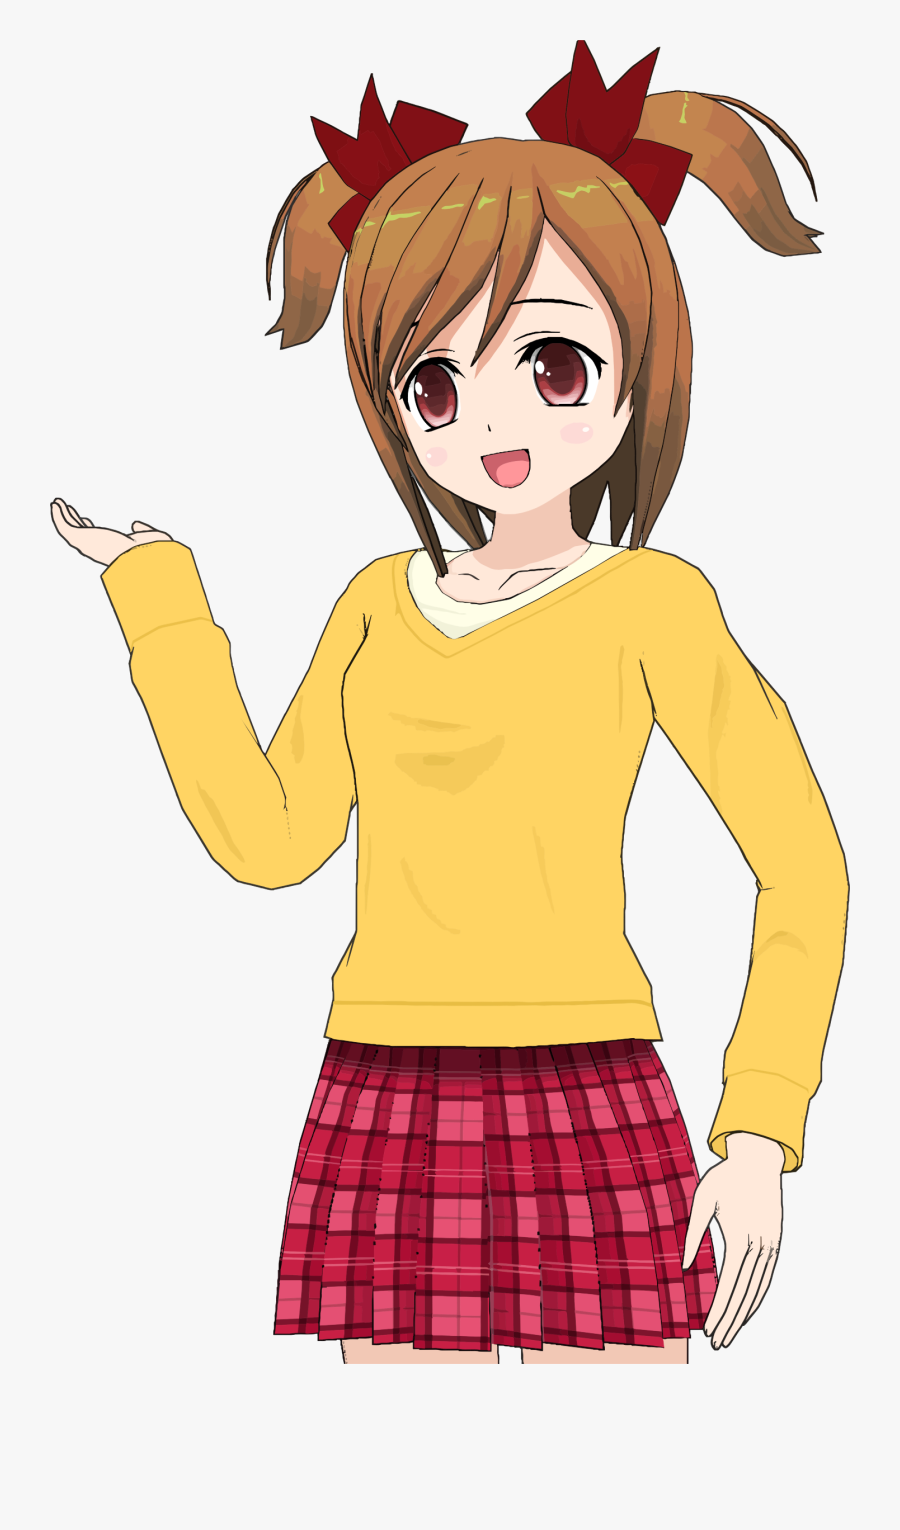 Clipart Anime Girl Orange Shirt - Anime Girl Clipart, Transparent Clipart